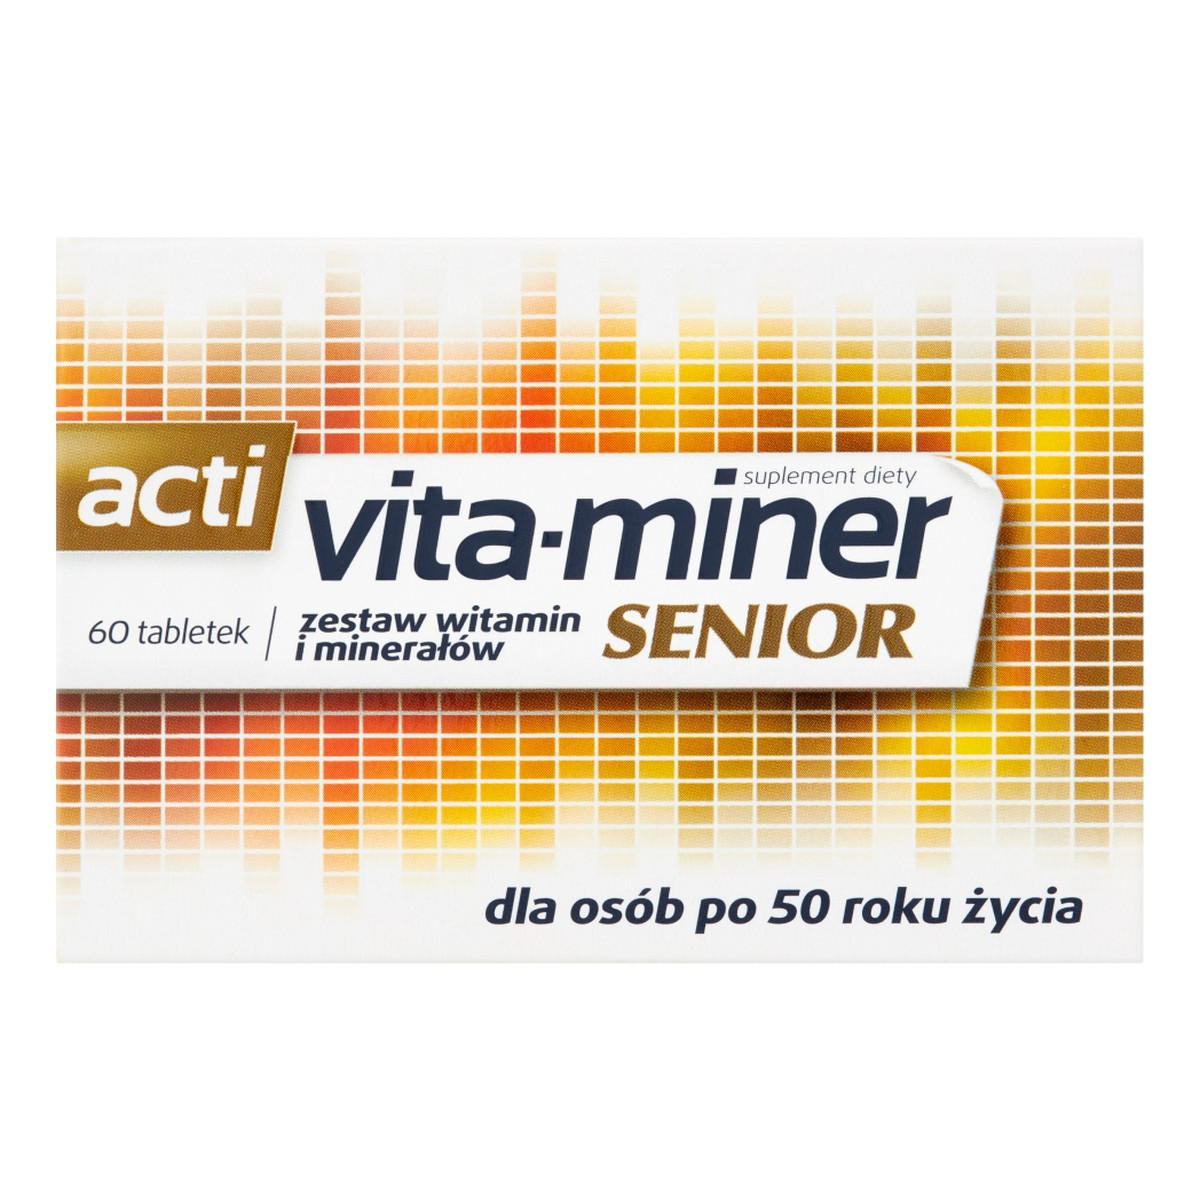 Acti vita-miner Senior Zestaw witamin i minerałów suplement diety 60 tabletek